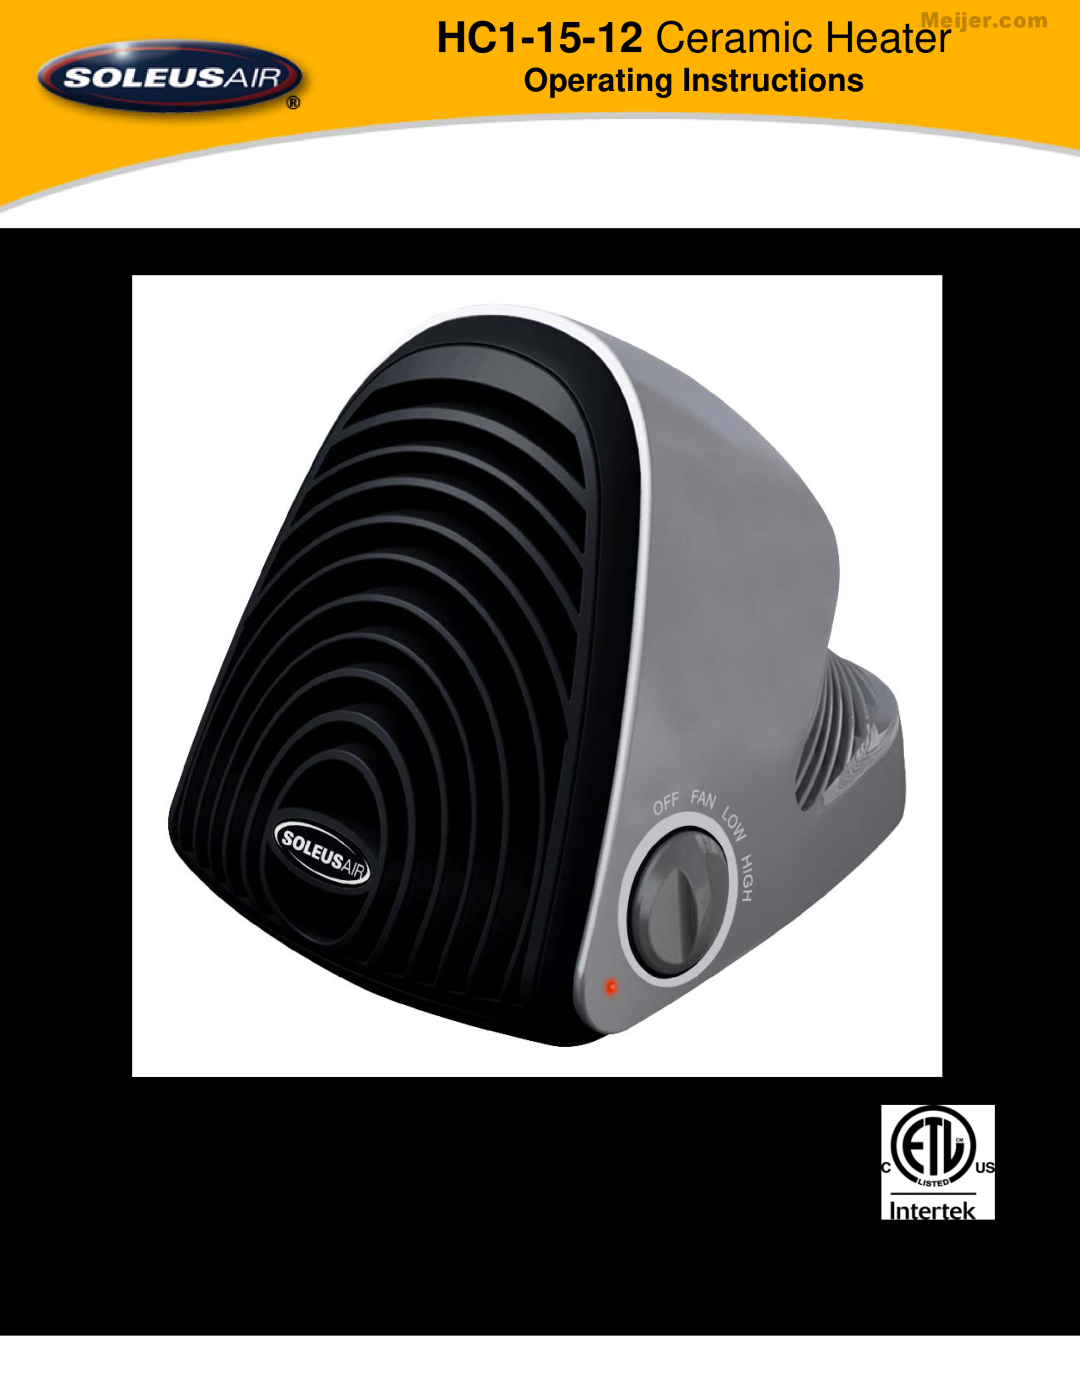 Soleus Air manual HC1-15-12 Ceramic Heater, Operating Instructions, 3077997 